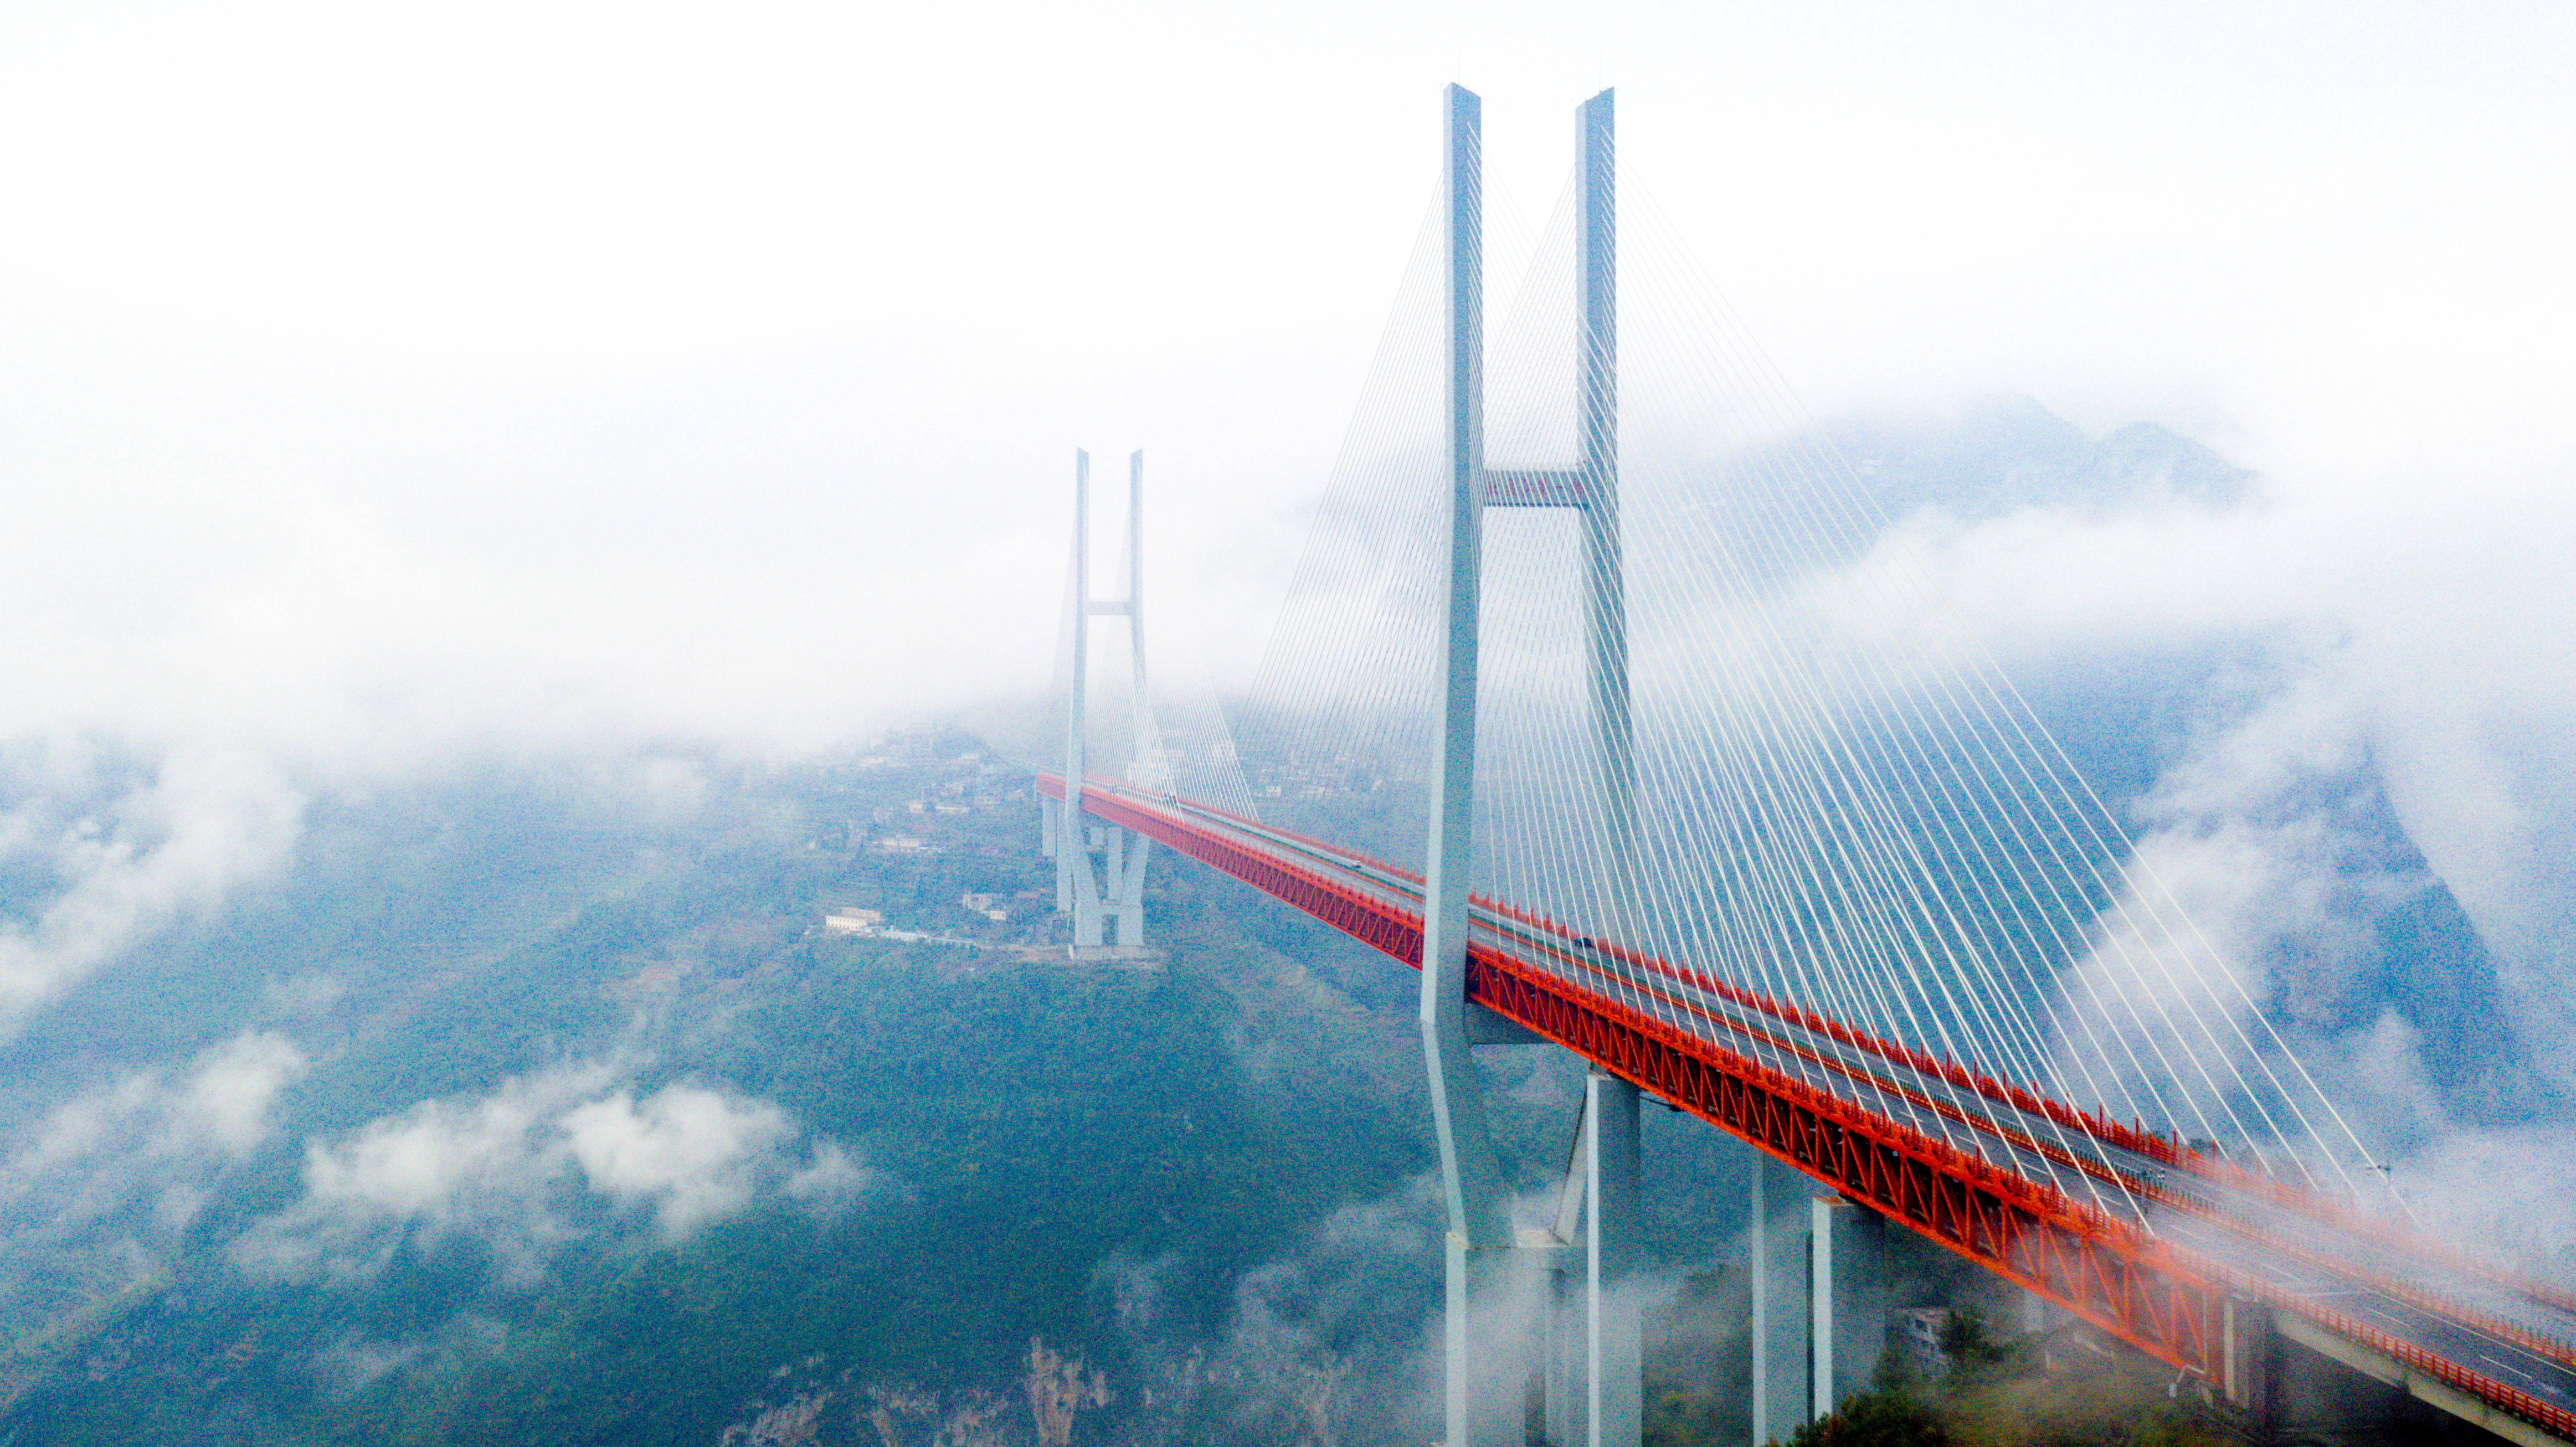 14日飞越中国桥梁博物馆11月28日拍摄的贵州北盘江大桥(无人机照片)